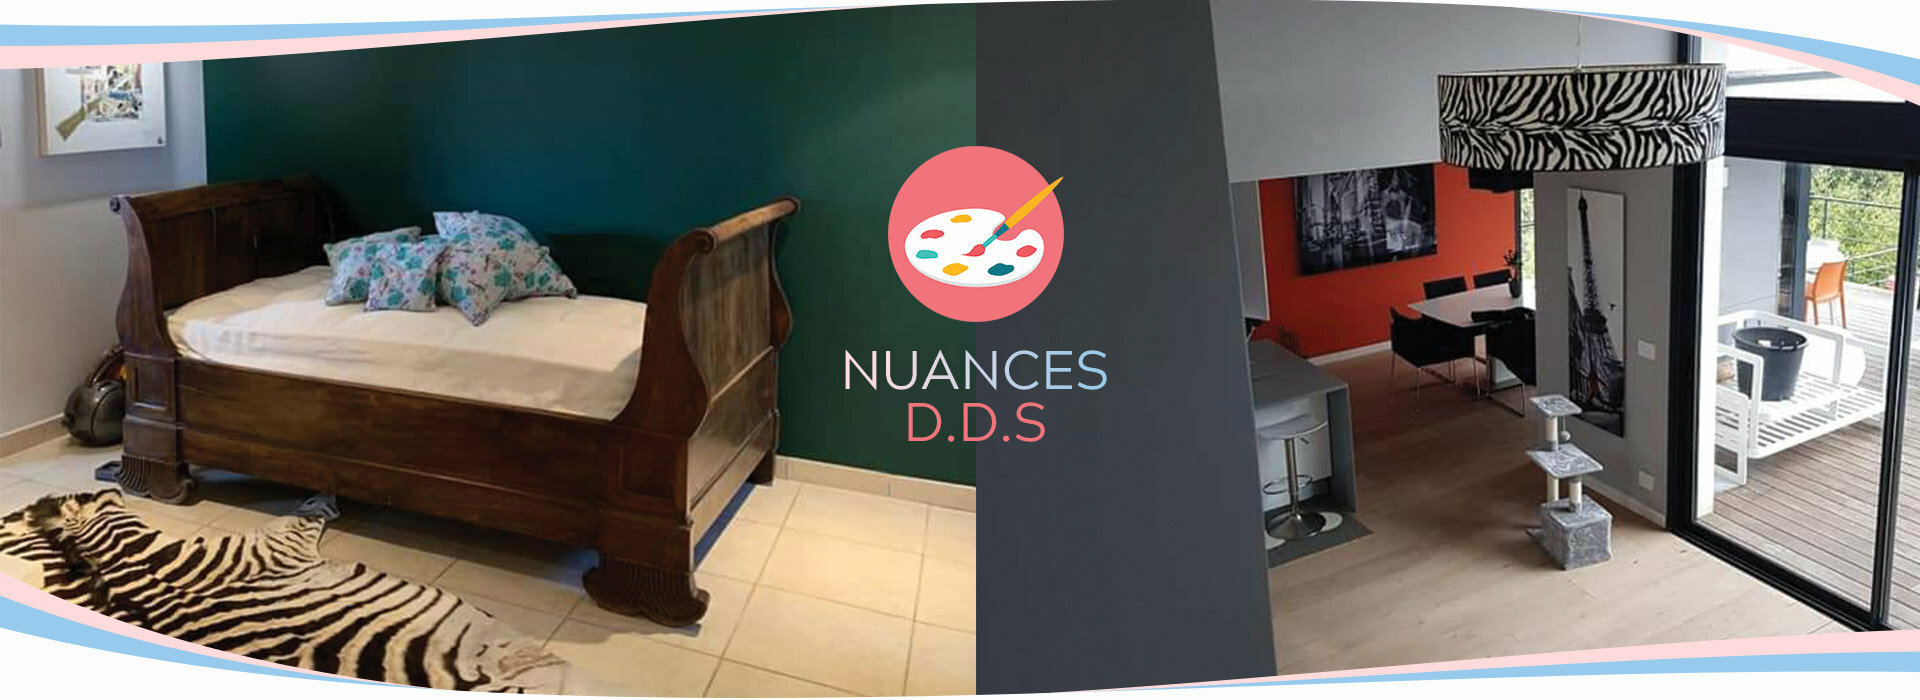 Peintres décorateurs en bâtiment  | NUANCES DDS - Montpellier